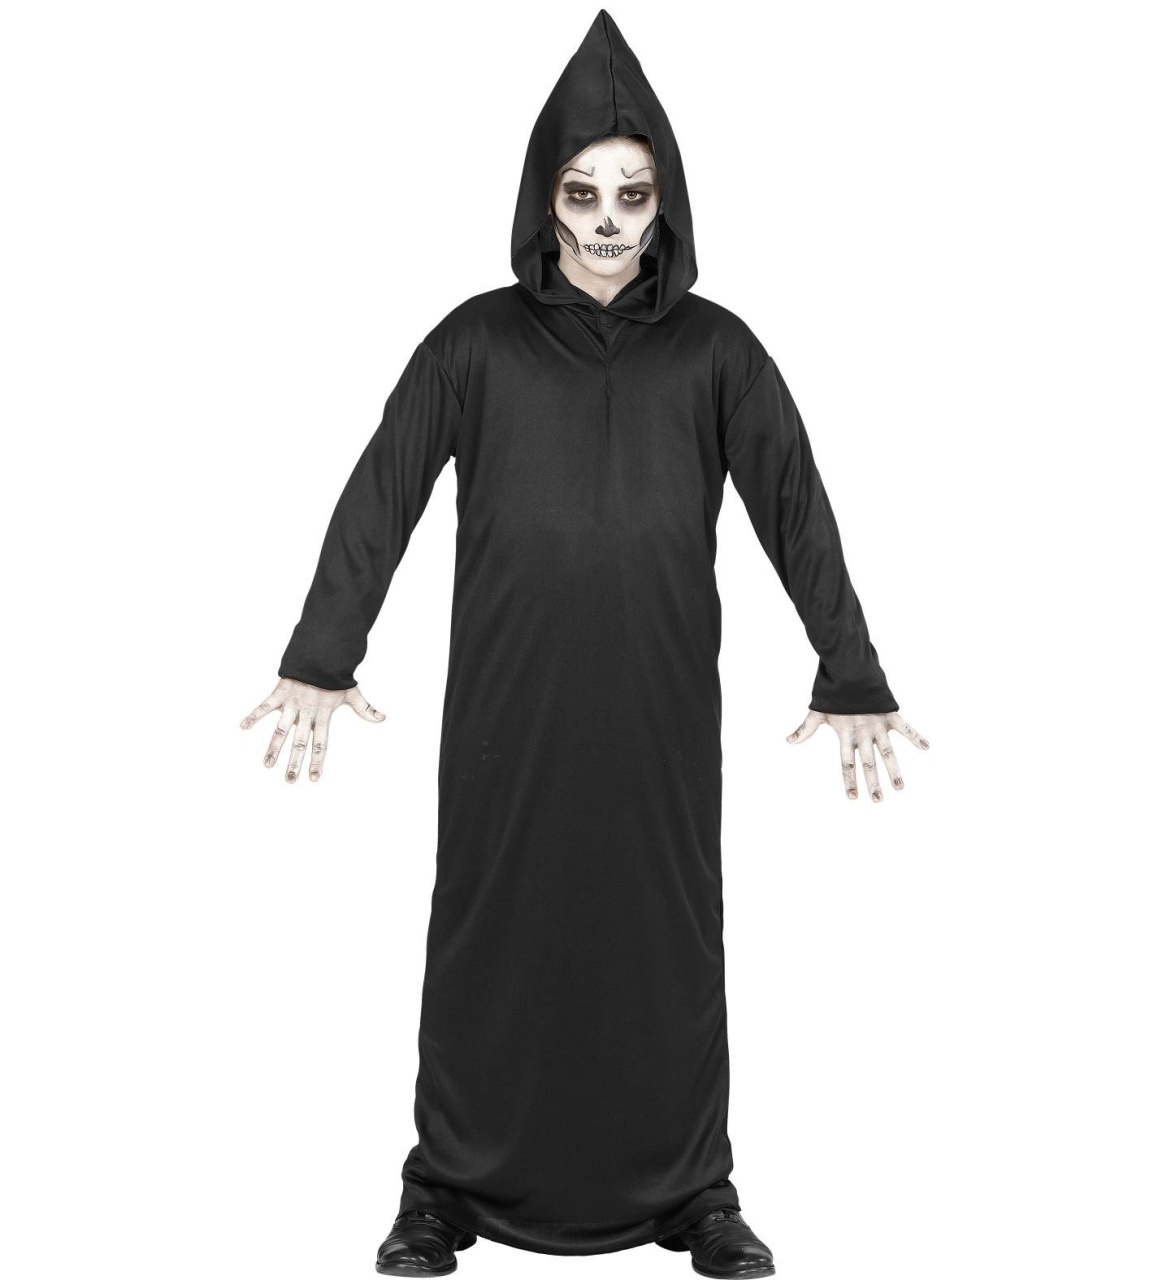 Kostüm Grim Reaper Gr. 140 8 - 10 Jahre